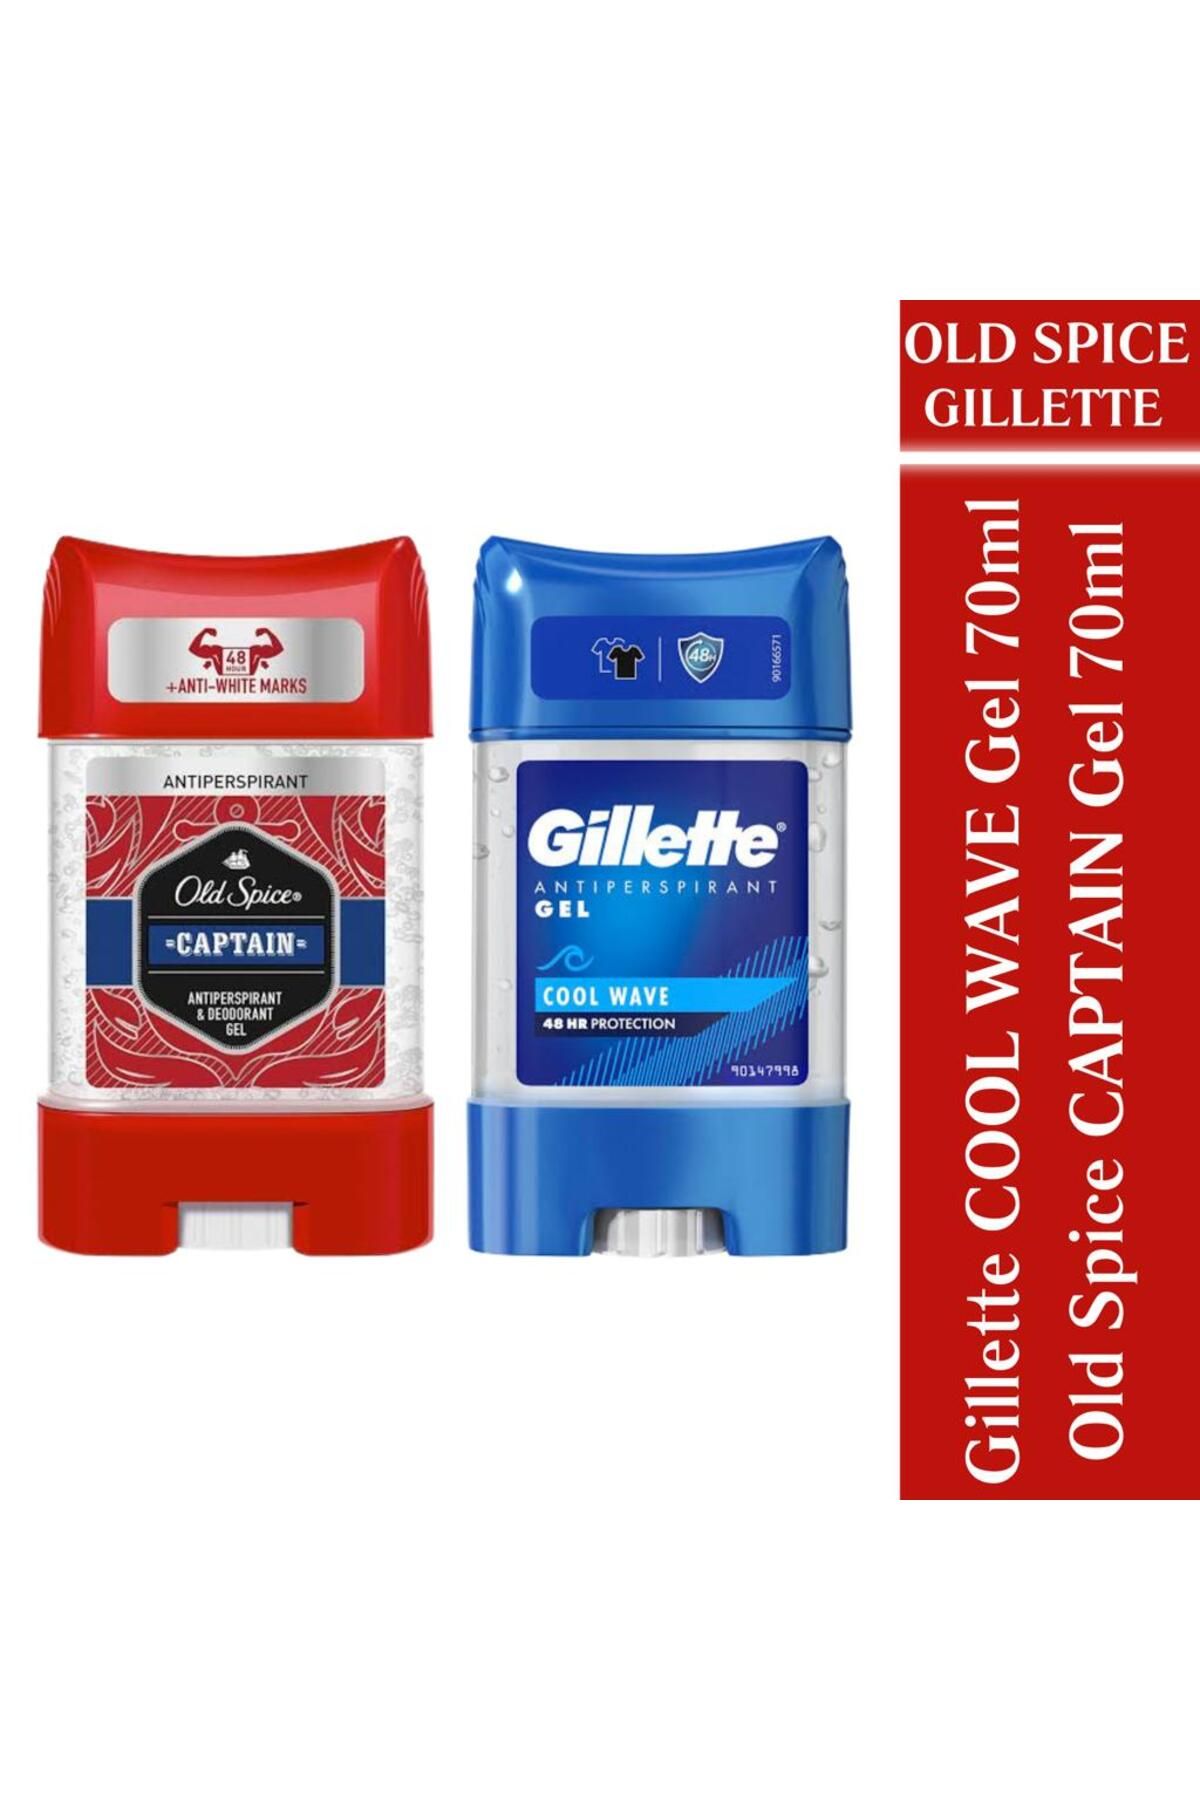 Gillette Antiperspirant Jel Cool Wave 70m + Old Spice Antiperspirant Jel Captain 70m